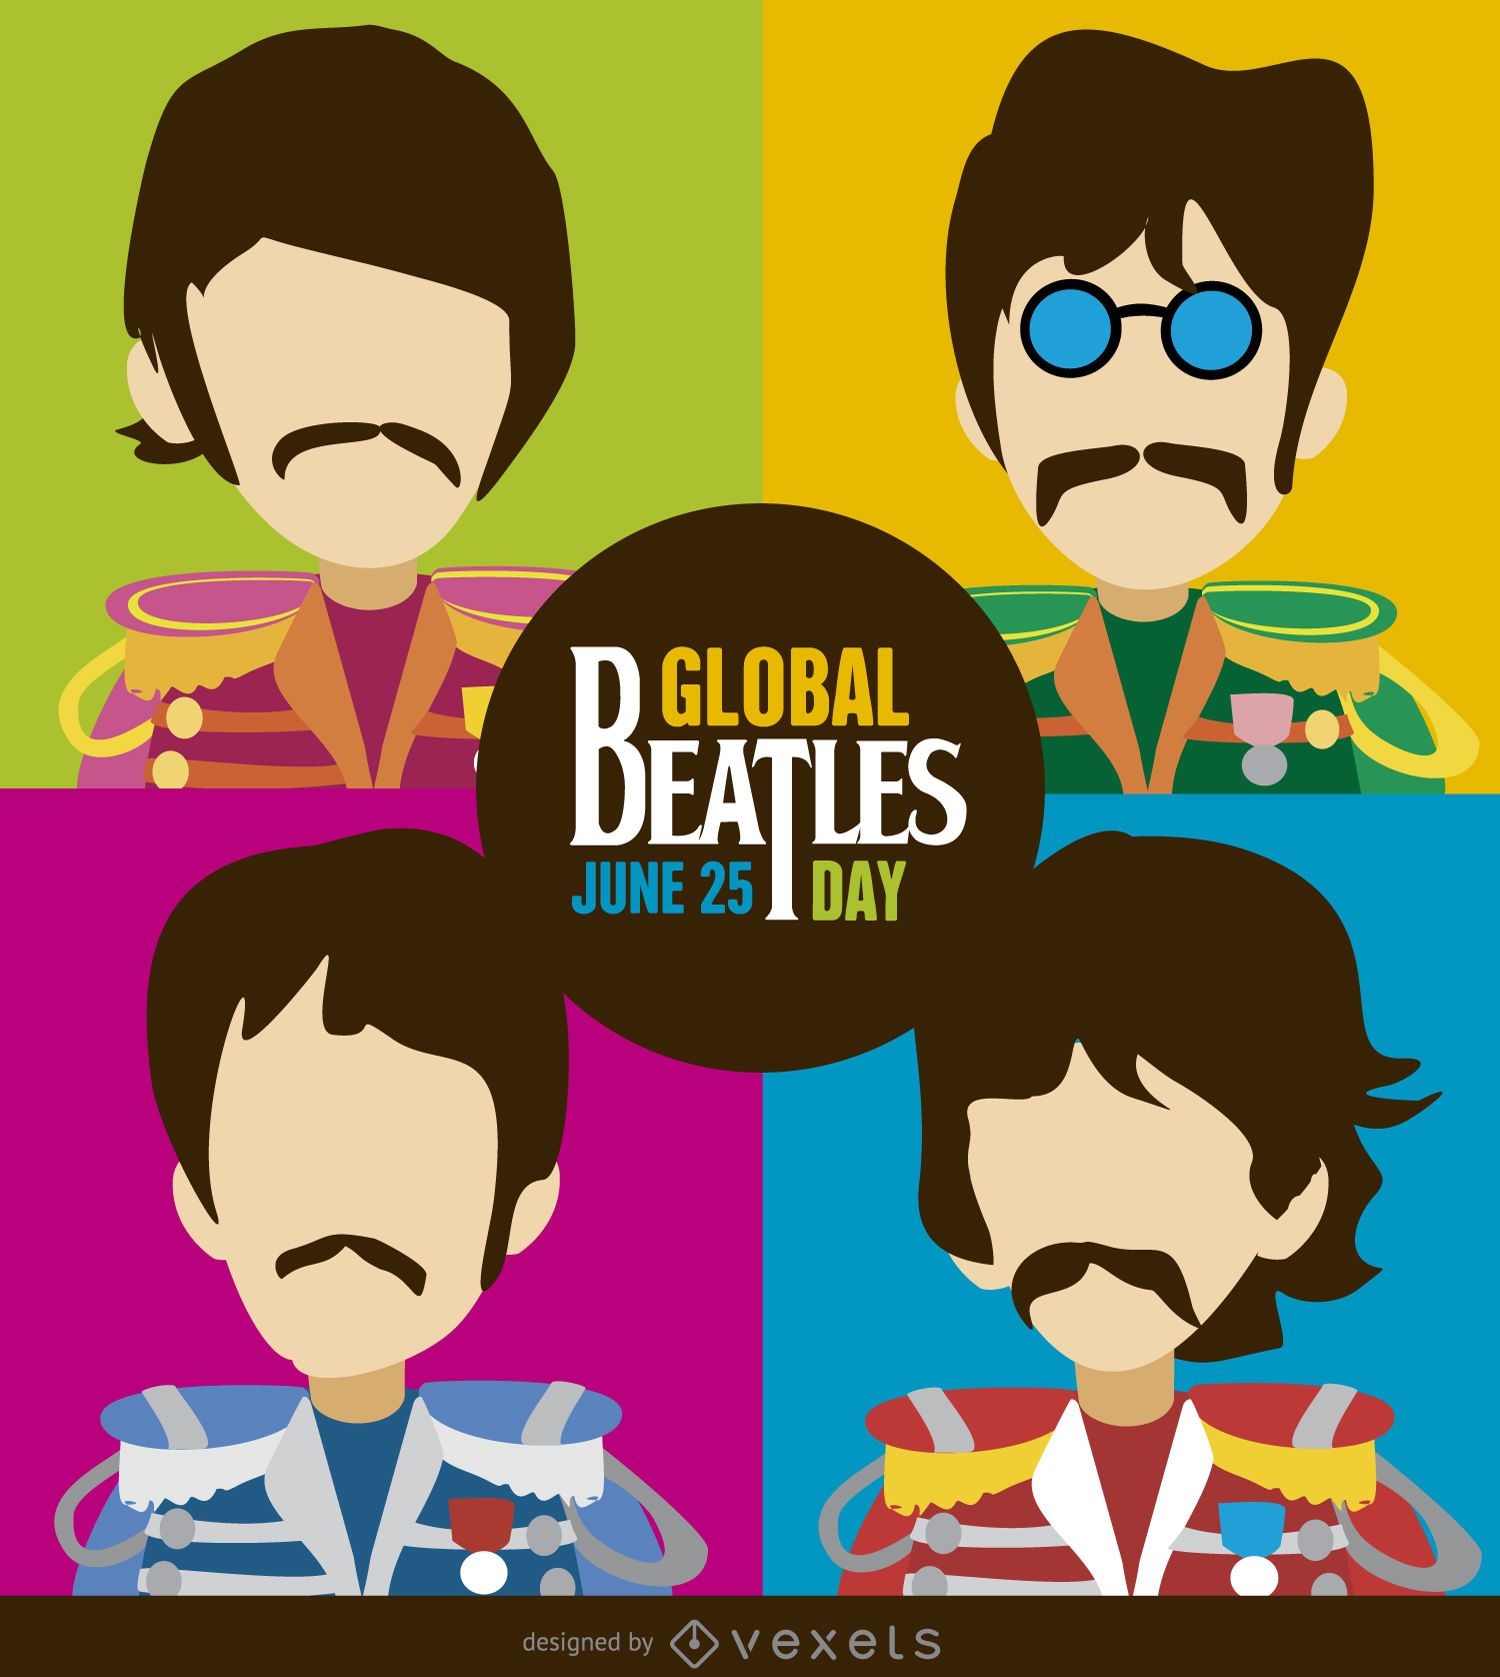 Ilustraci?n de dibujos animados del d?a de los Beatles